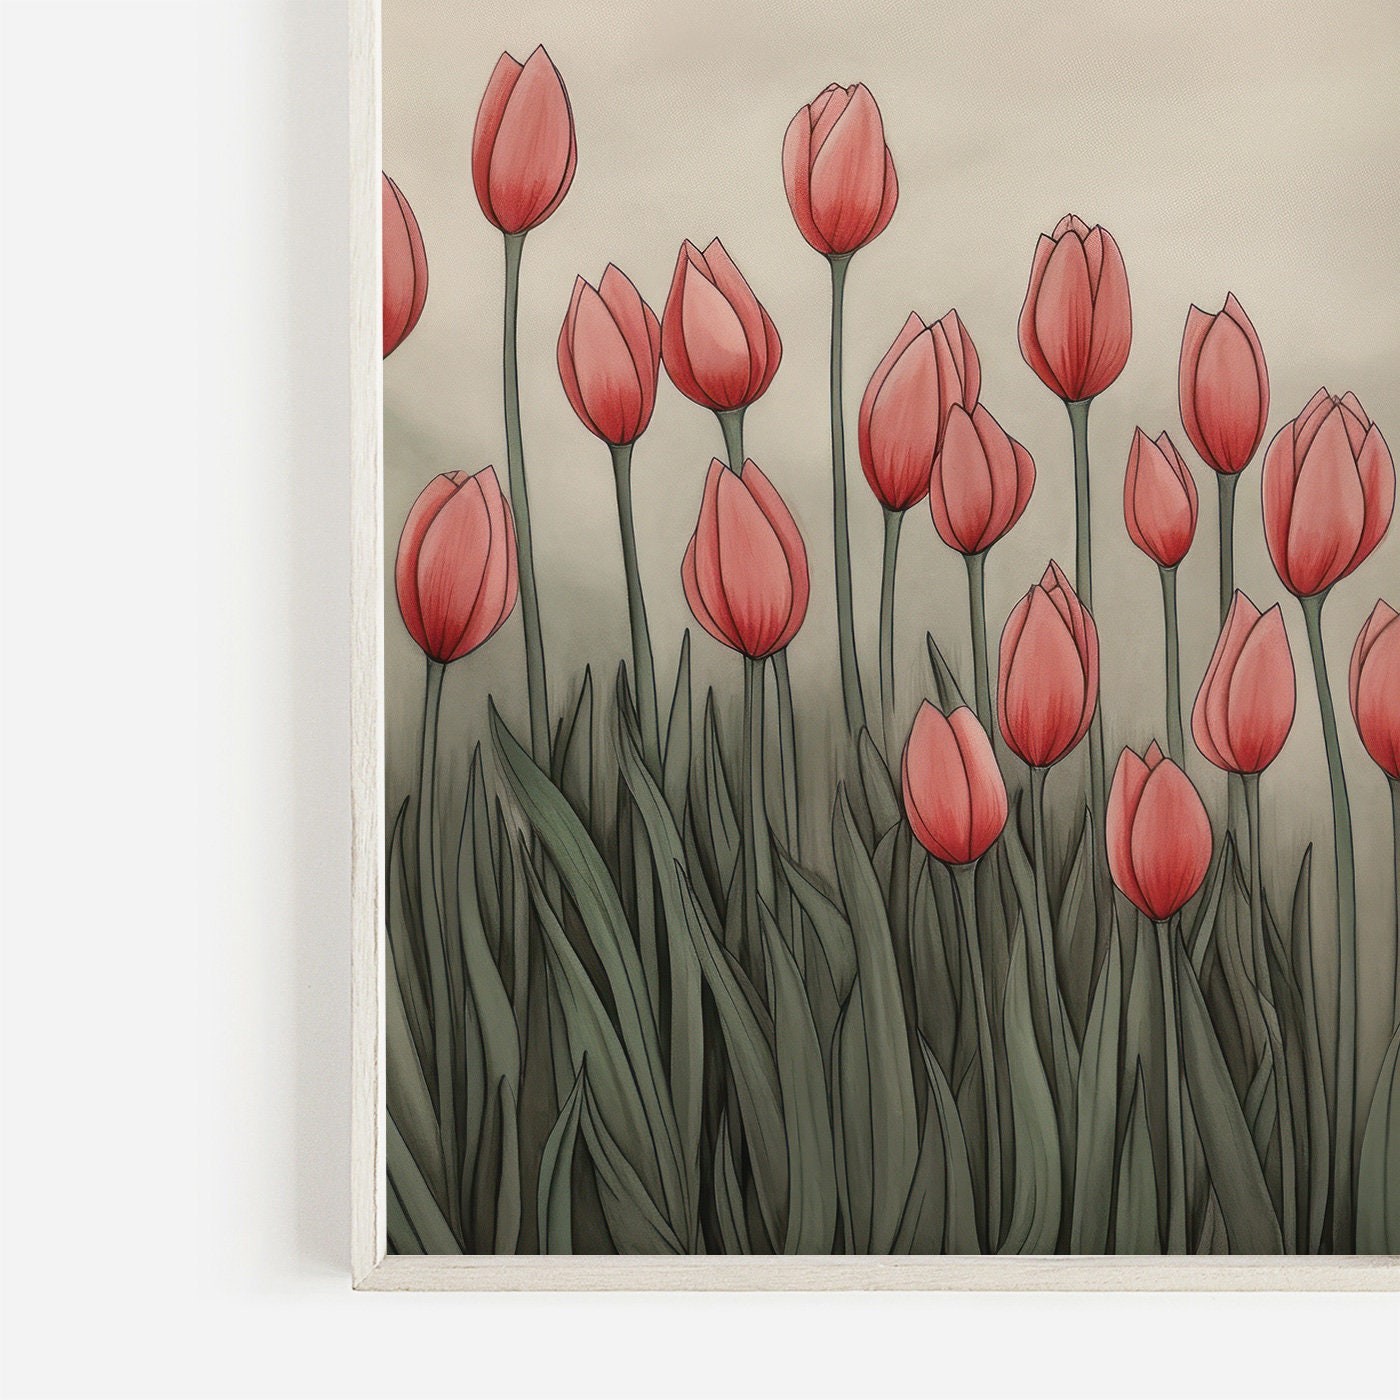 Vintage Floral Print, Tulip Printable Wall Art, Field of Red Tulip Flowers, Flower Meadow Artwork, Digital Printable Flower Decor